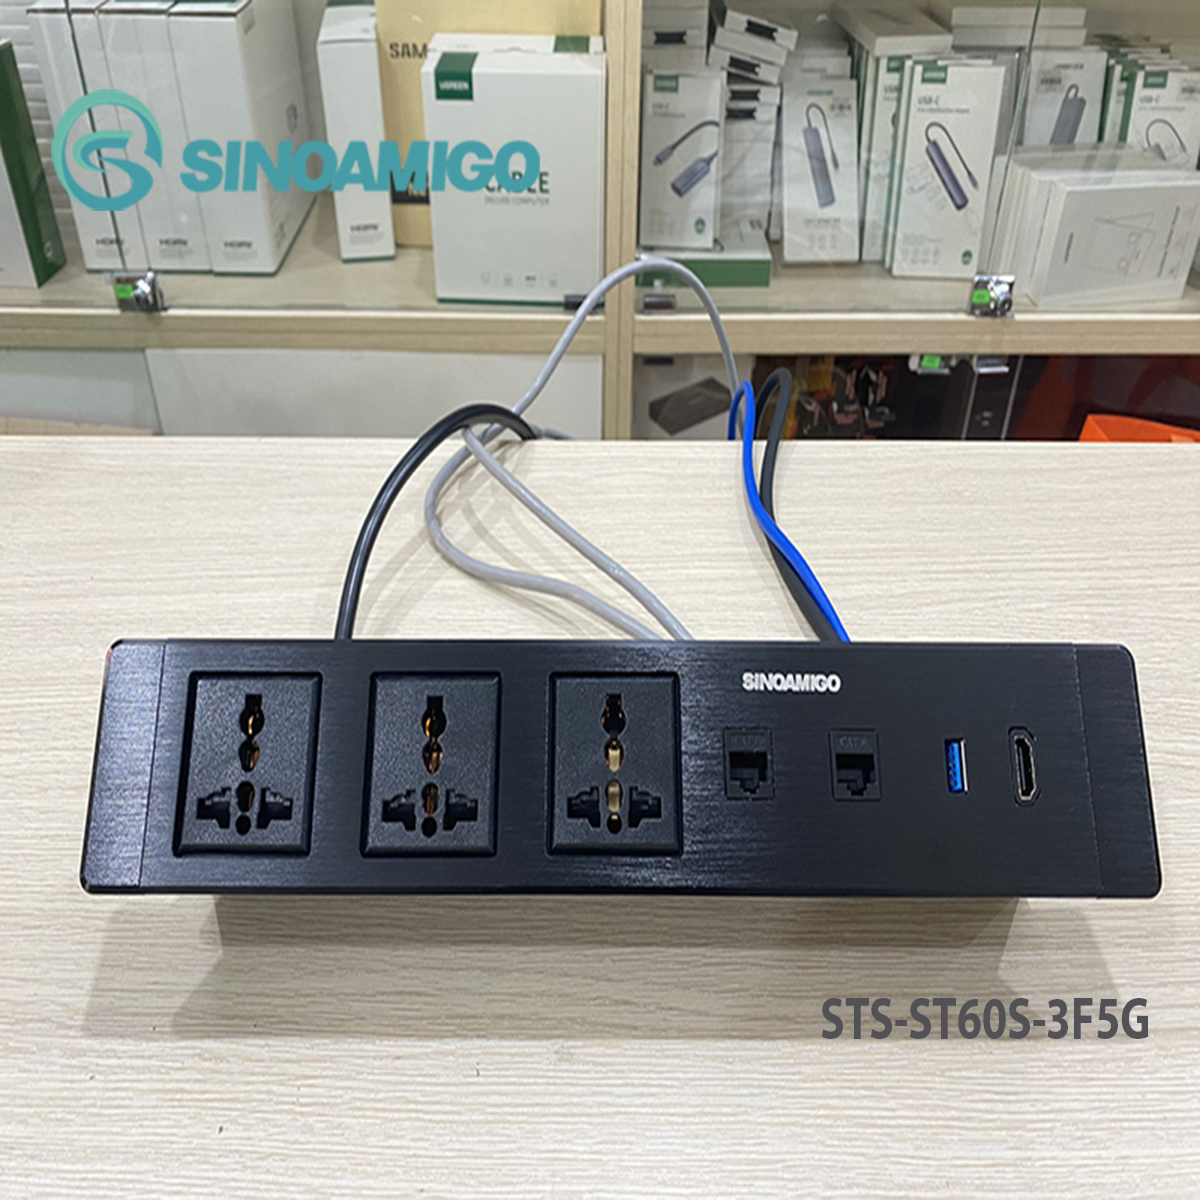 Hộp ổ cắm âm bàn Sinoamgo STS-ST60S-2F5G, chất liệu nhôm xước cao cấp, tích hợp 3 ổ cắm điện, 2 lan cat6, HDMI, USB 3.0 - Hàng chính hãng